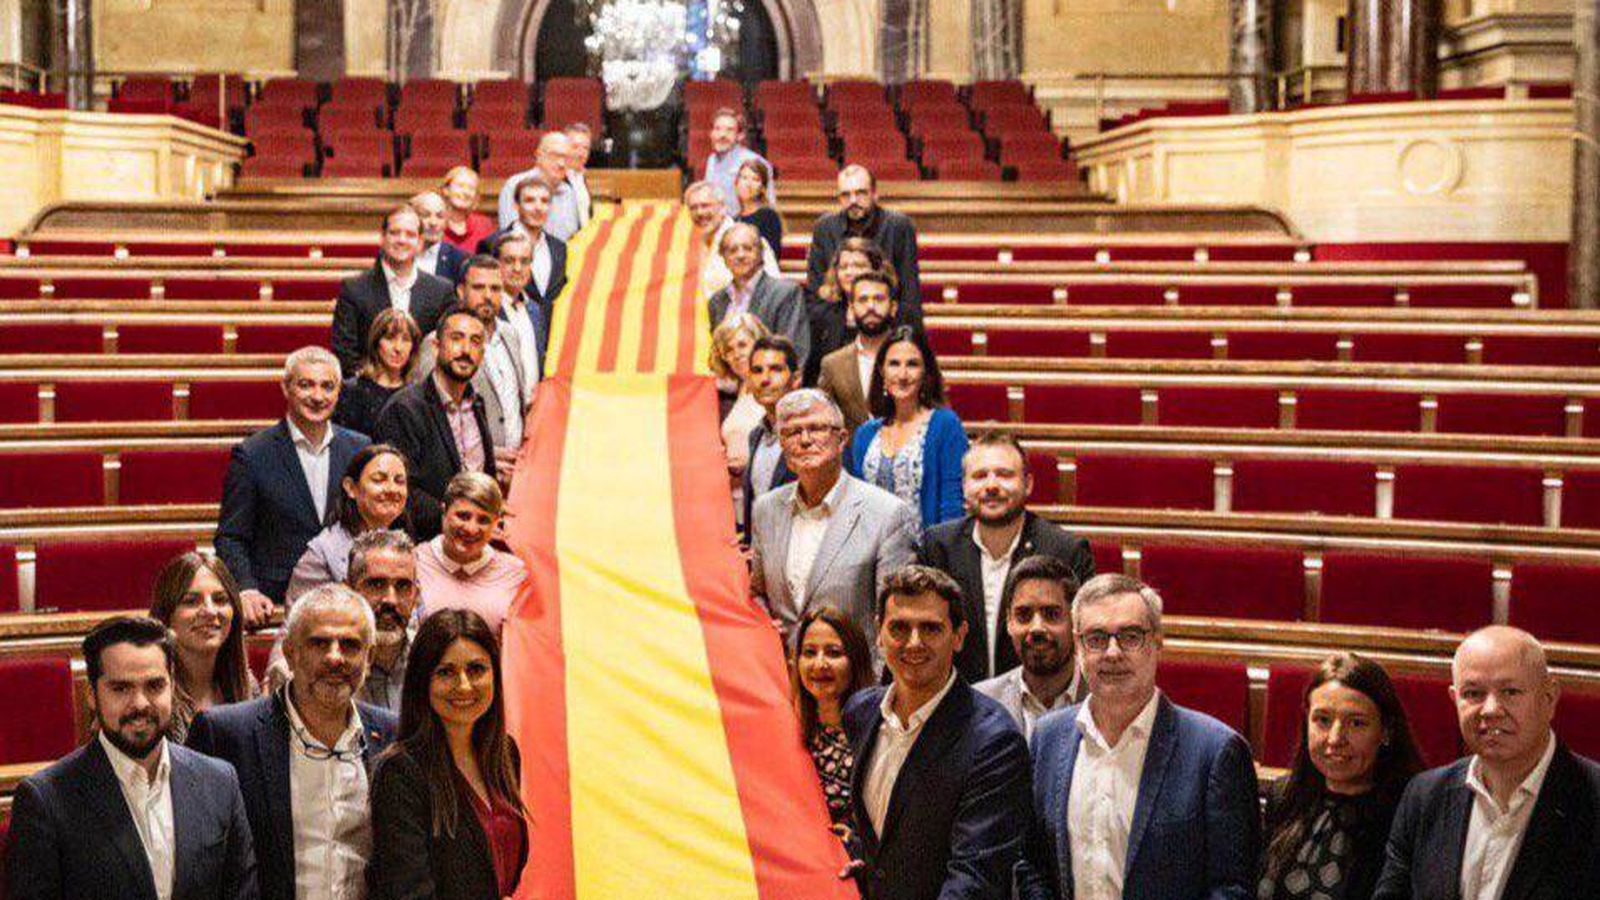 Foto: El grupo parlamentario de Ciudadanos despliega una imagen de la bandera de España y Cataluña en el Parlament. (Twitter)